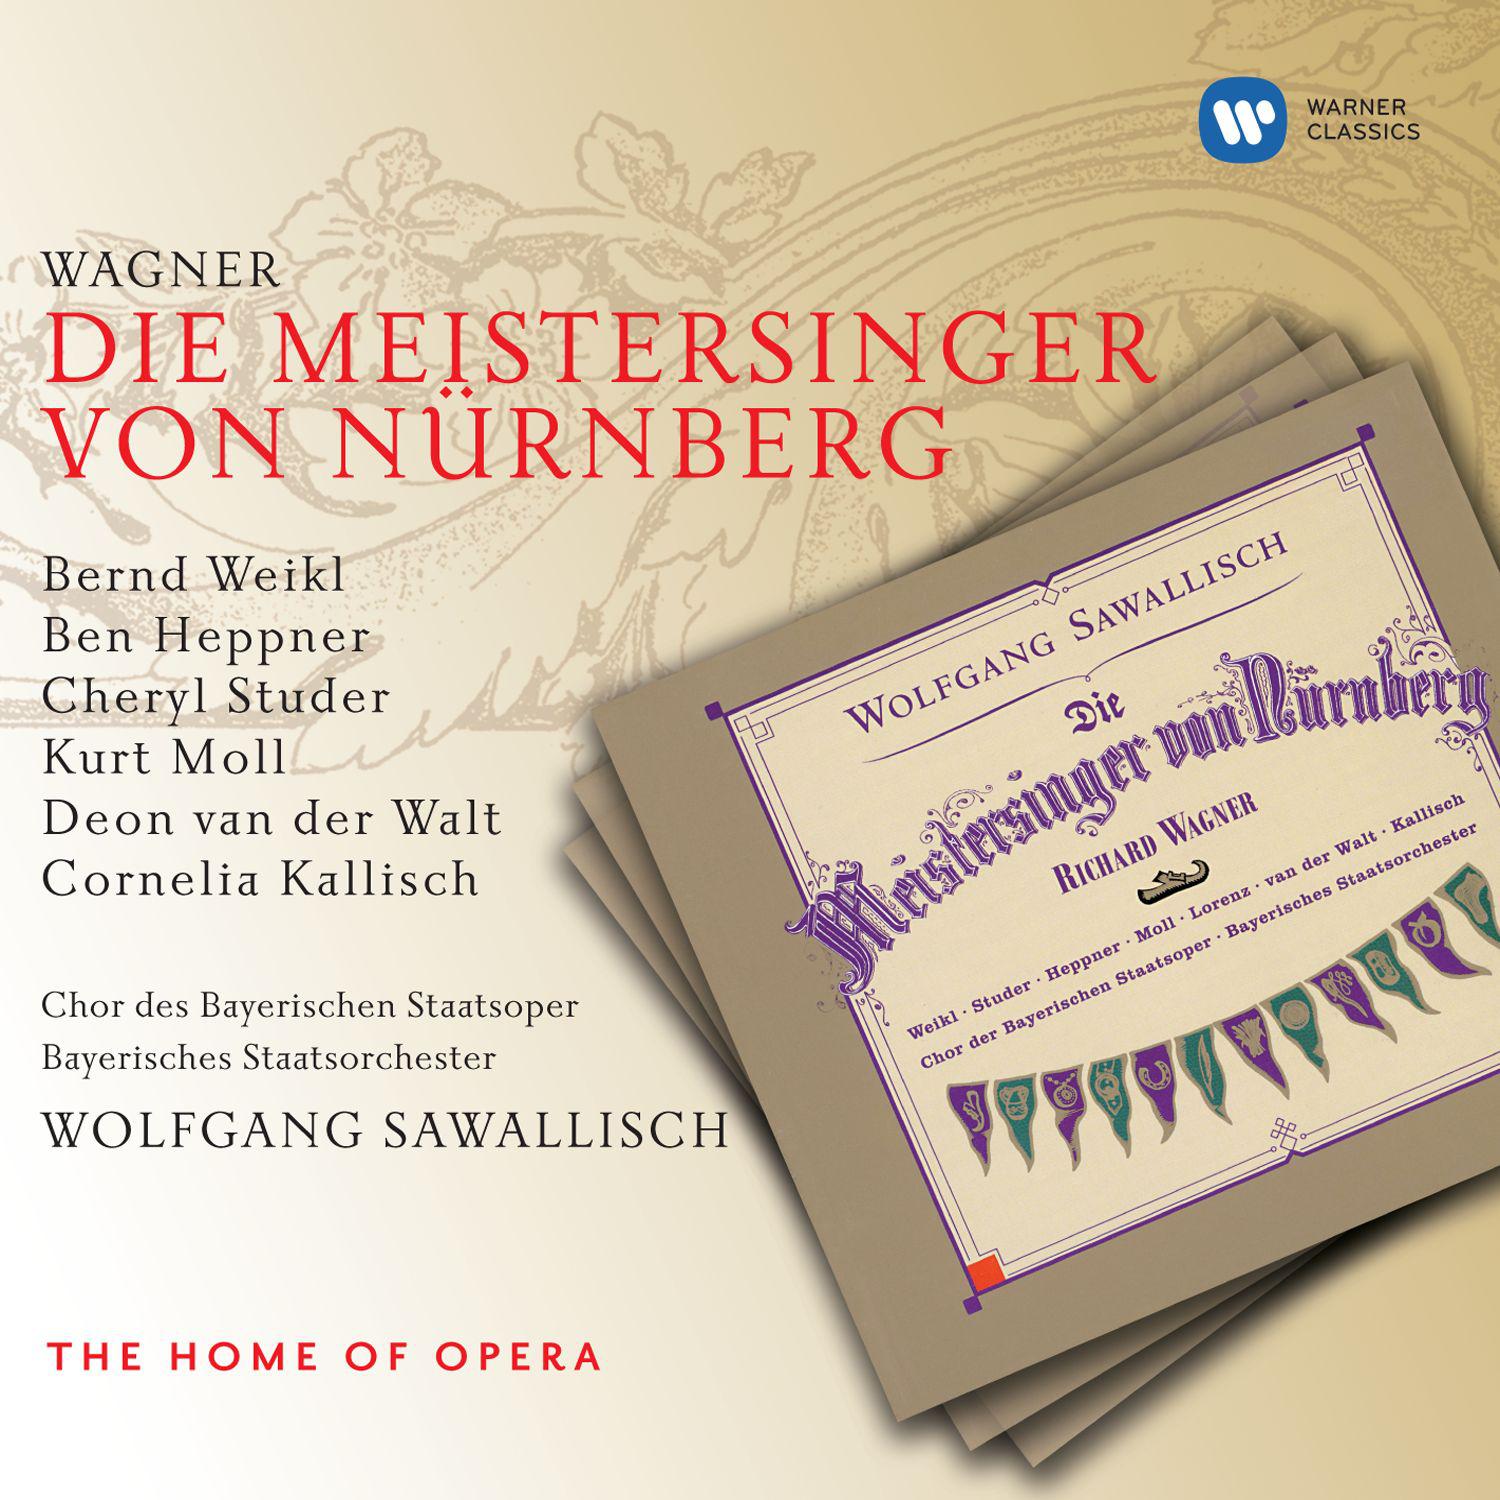 Die Meistersinger von Nürnberg, Act 2, Scene 6:Jerum! Jerum! Hallo hallohoe!